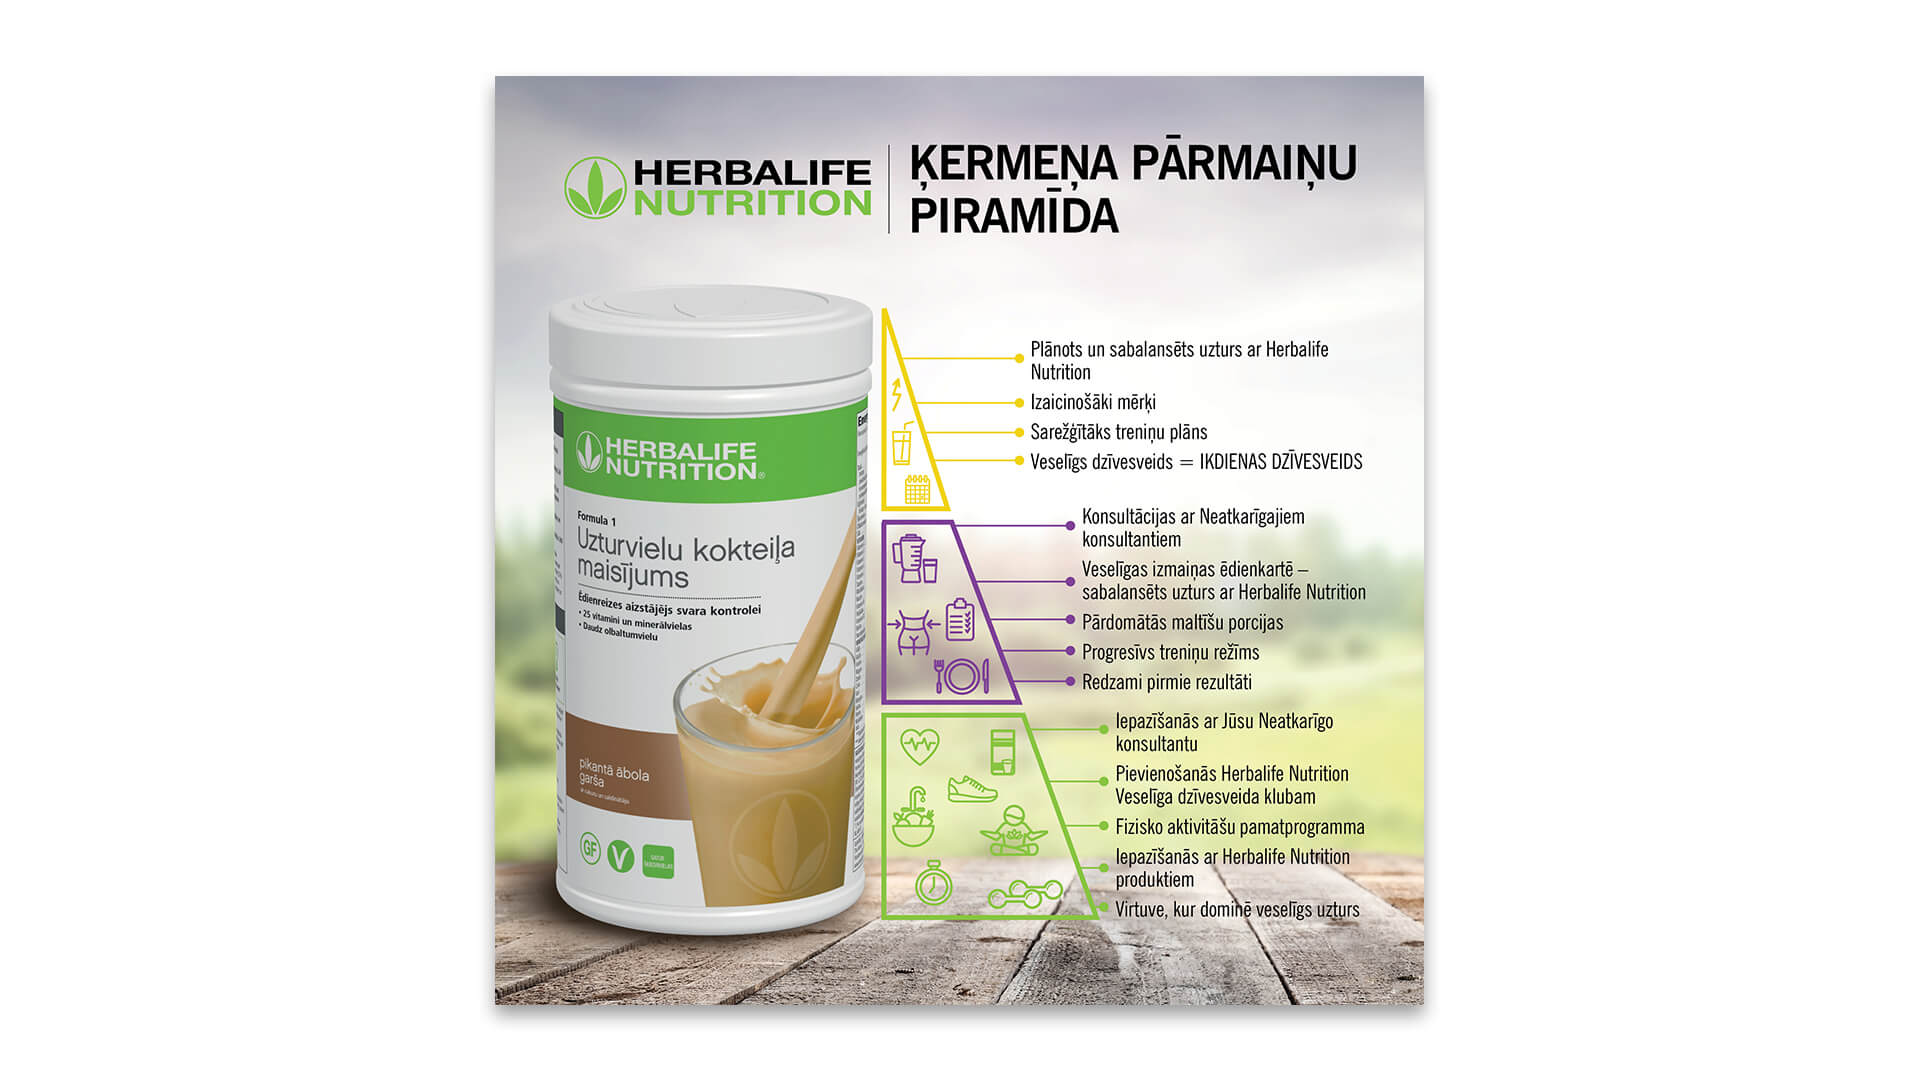 Herbalife-nutrition_kermena-parmainu-piramida_1920x1080